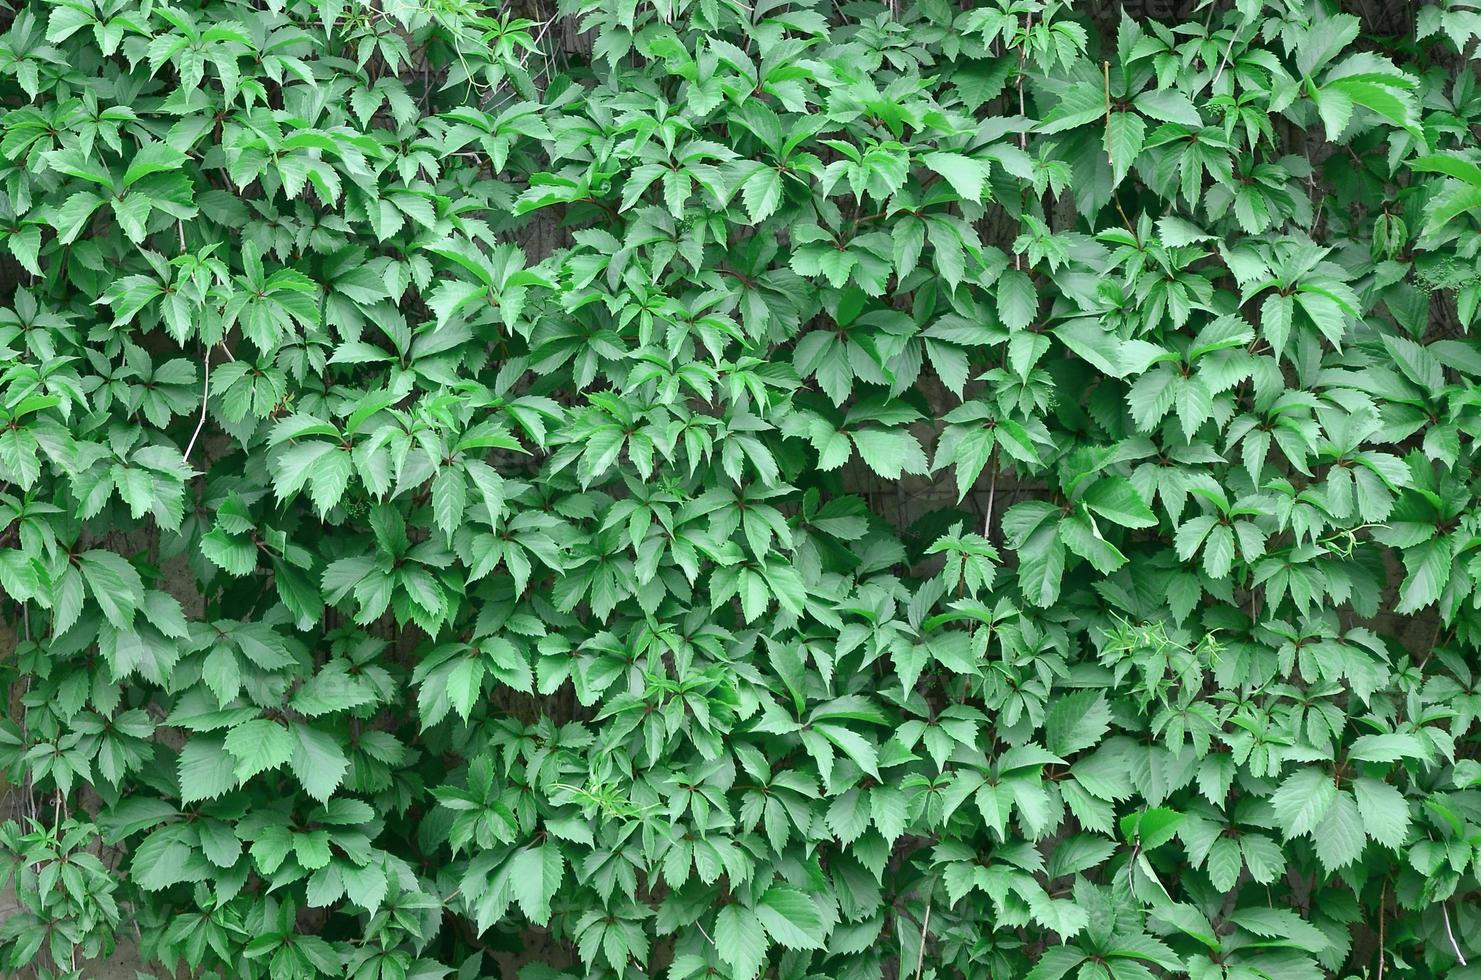 groen klimop groeit langs de beige muur van geschilderd tegels. structuur van dicht struikgewas van wild klimop foto